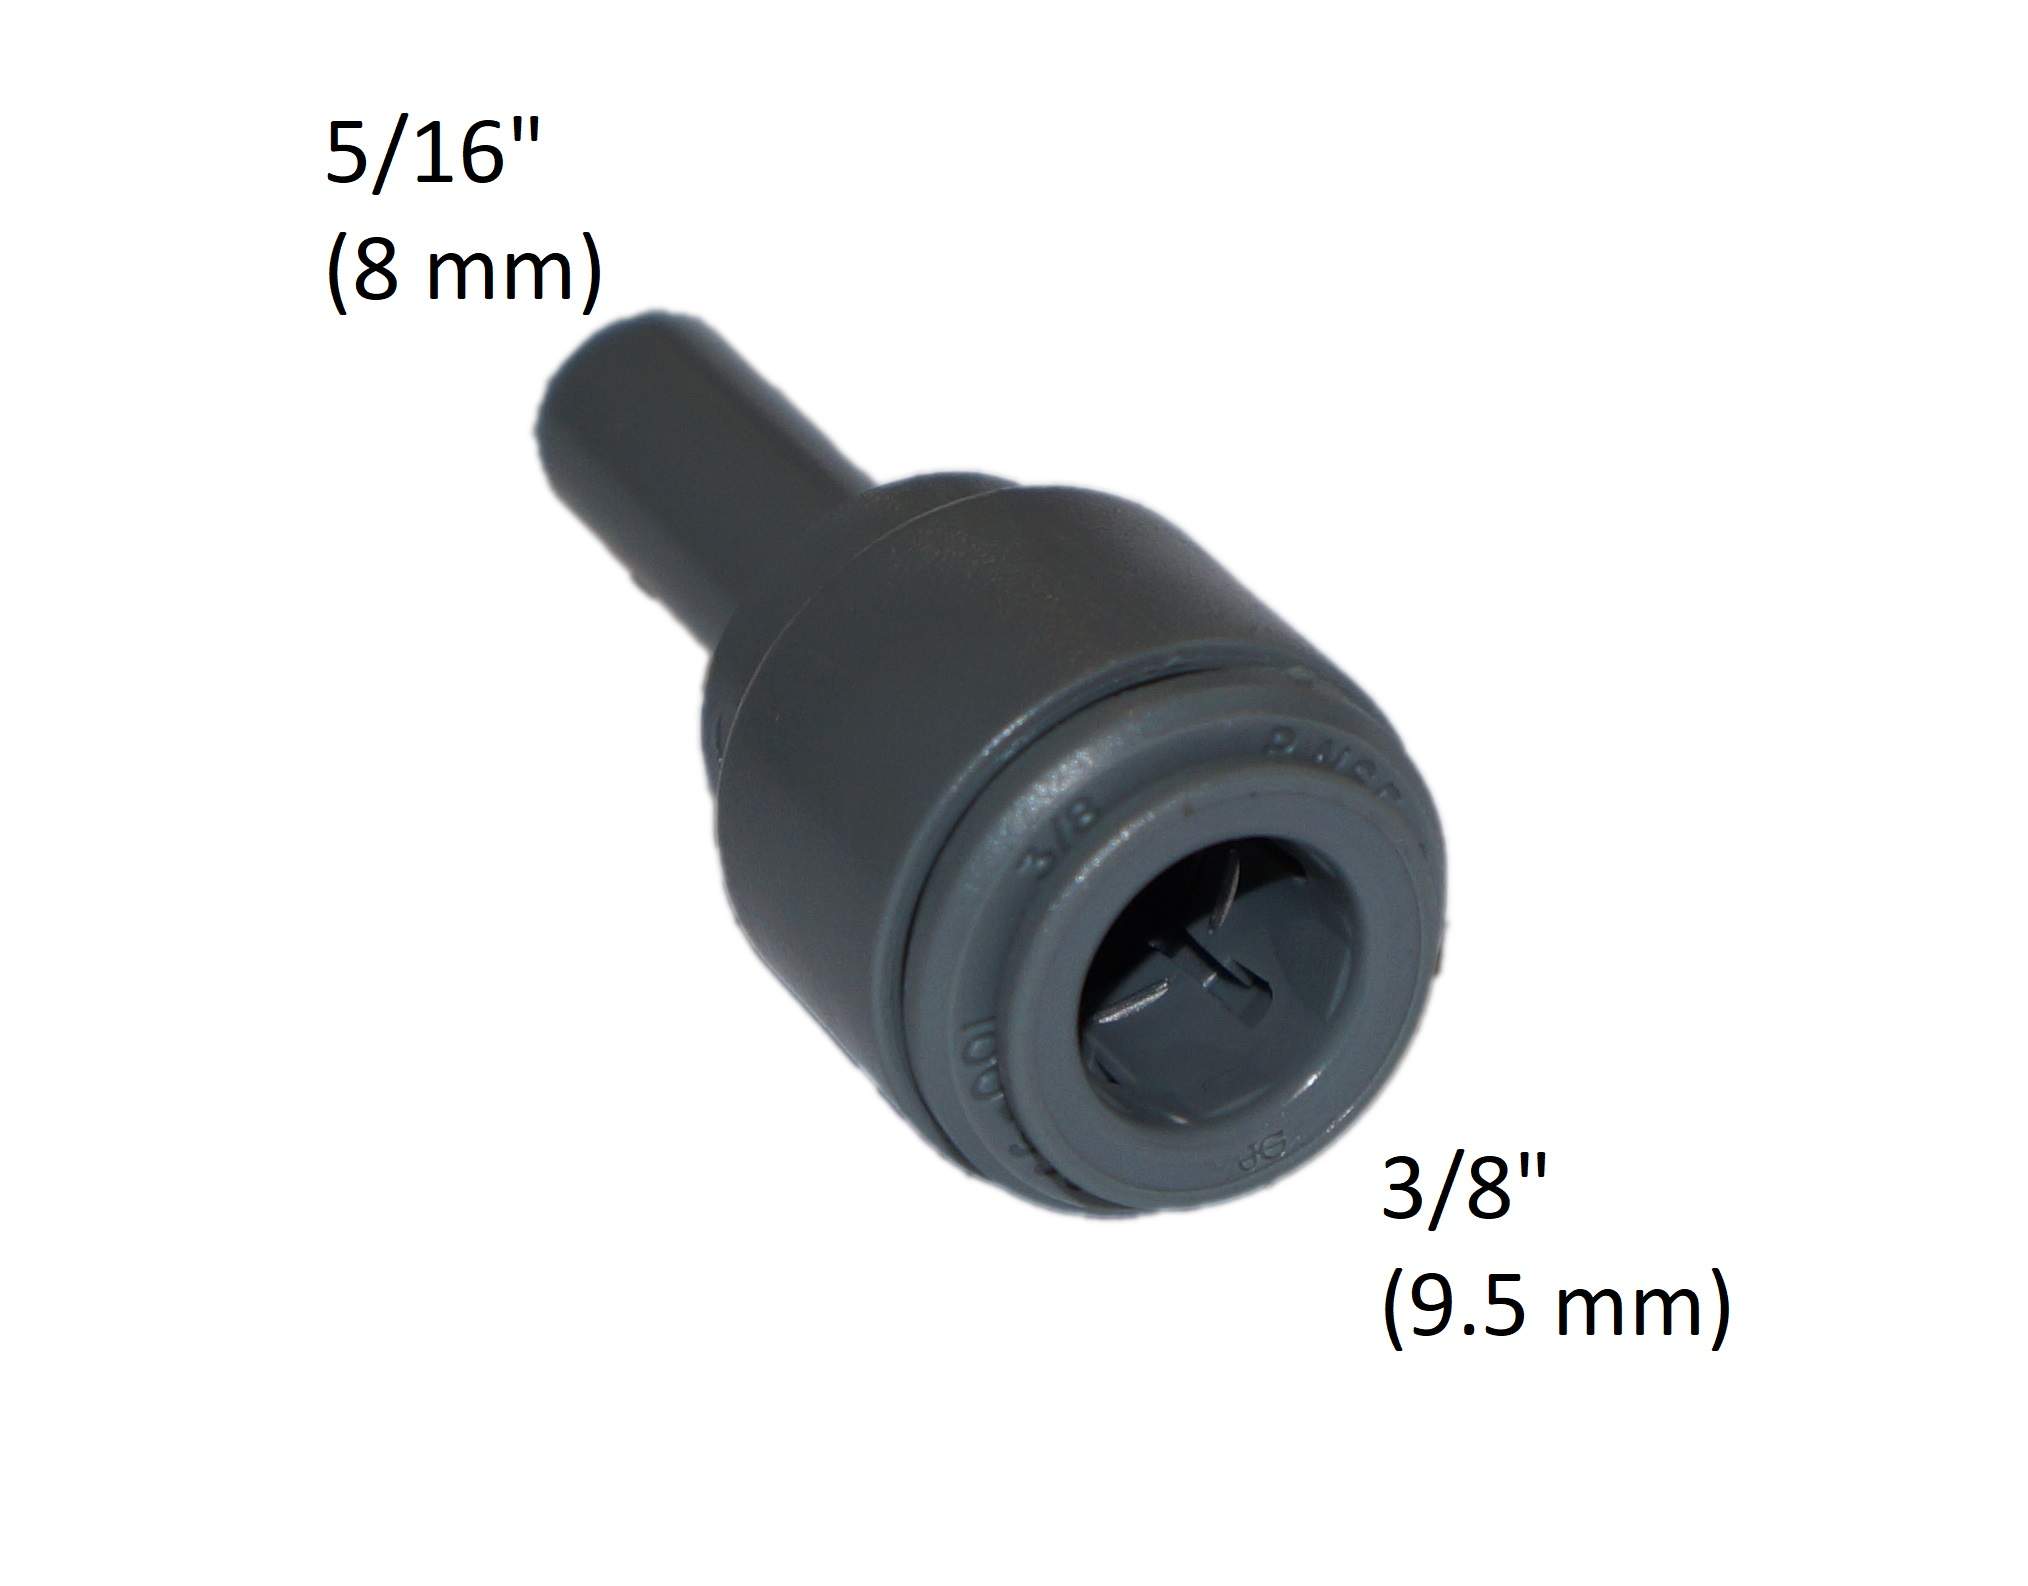 El accesorio de acoplamiento para el tubo de 3/8" (9,5 mm) a la toma de 5/16" (8 mm)